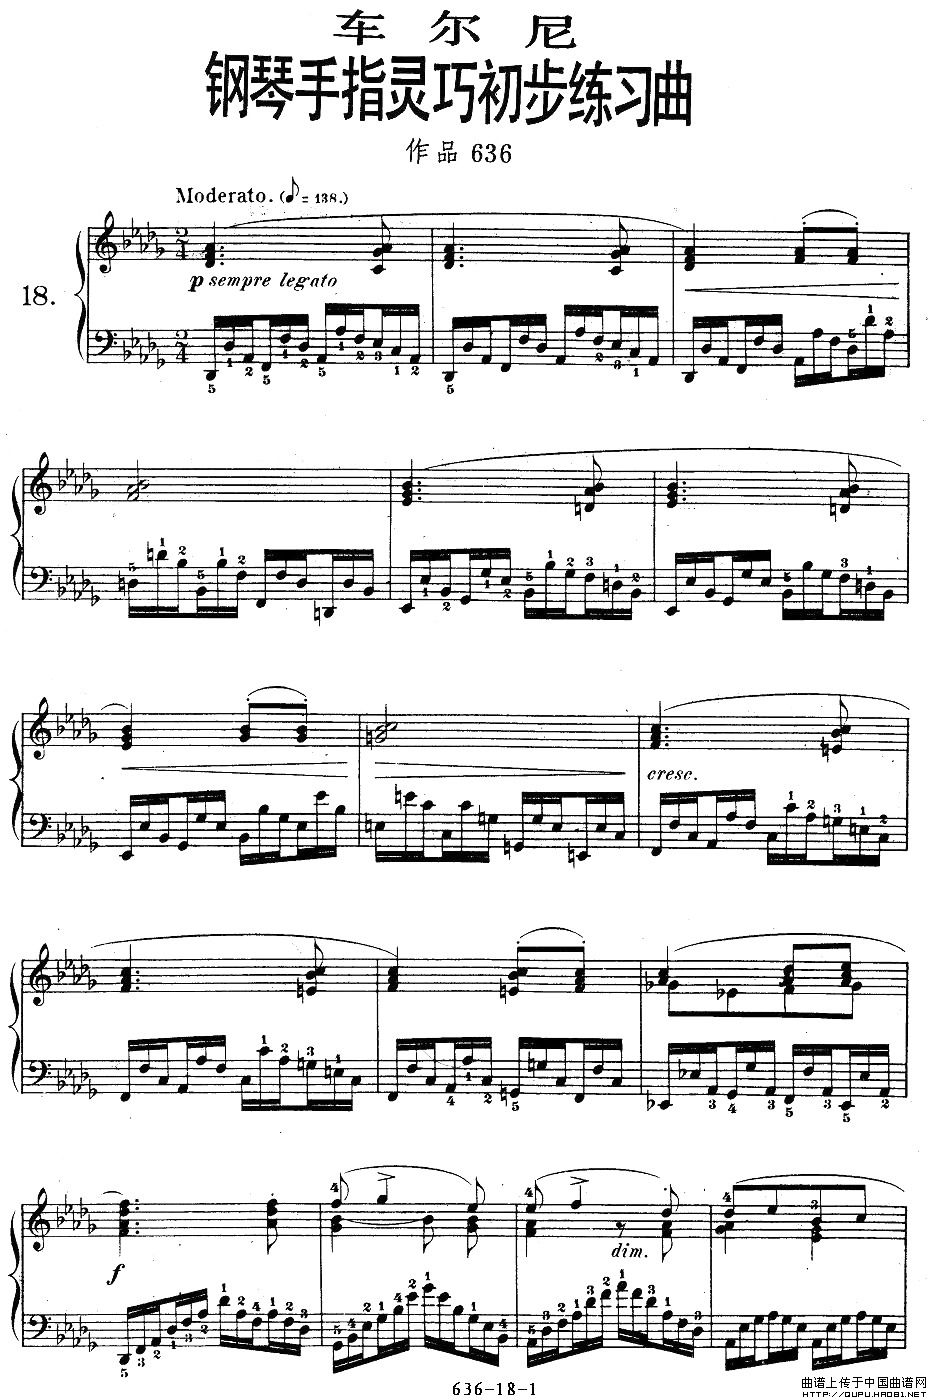 车尔尼钢琴手指灵巧初步练习曲OP.636-18